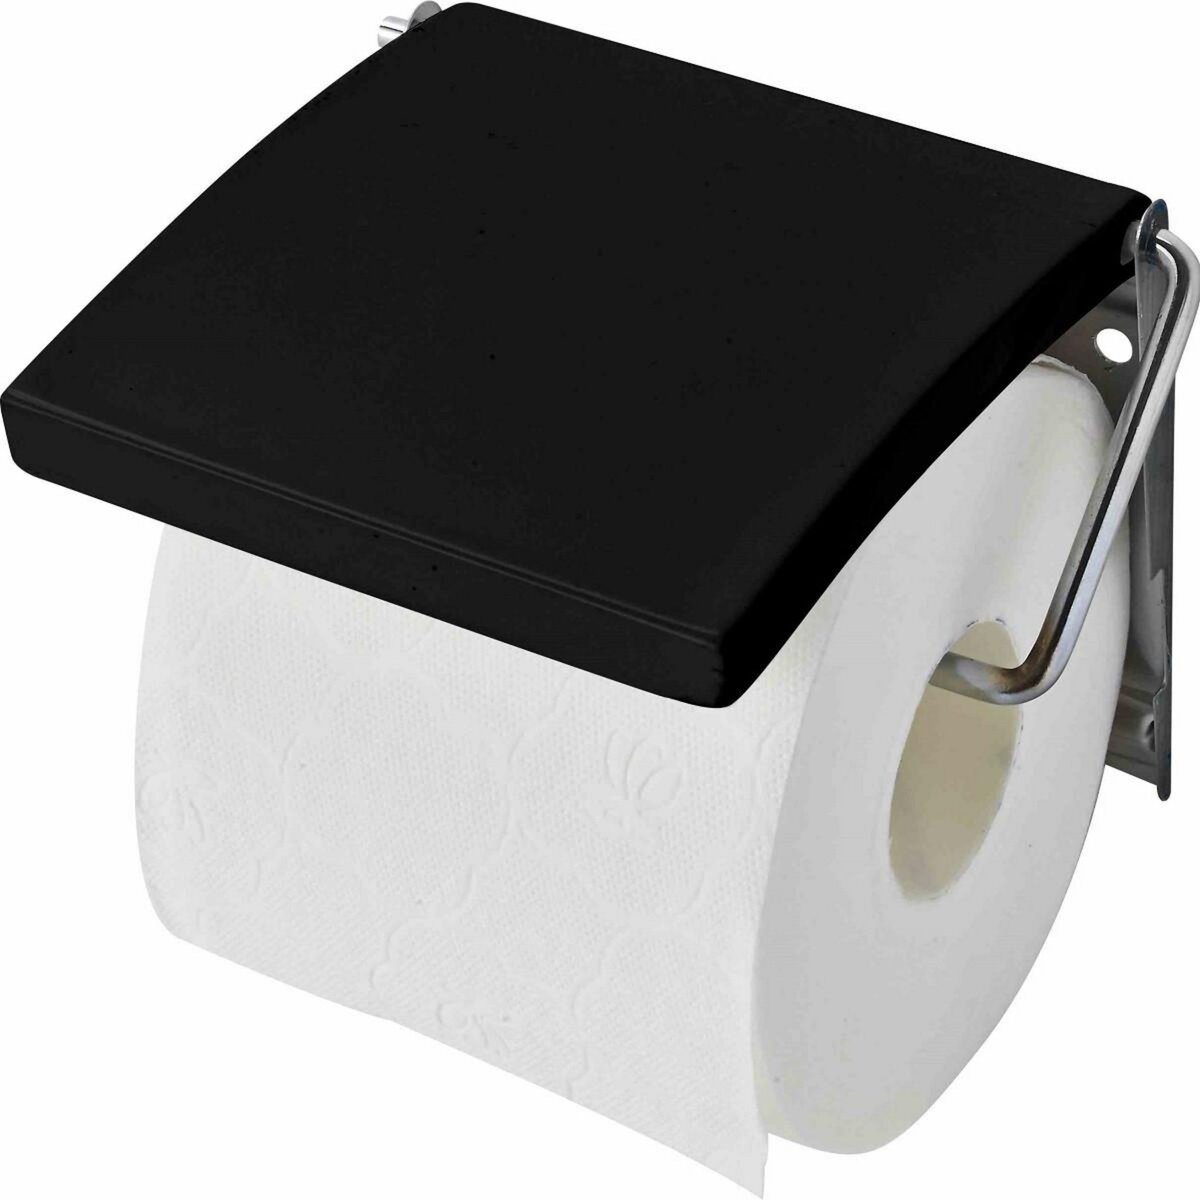 GUY LEVASSEUR dérouleur à papier wc en mdf pureline